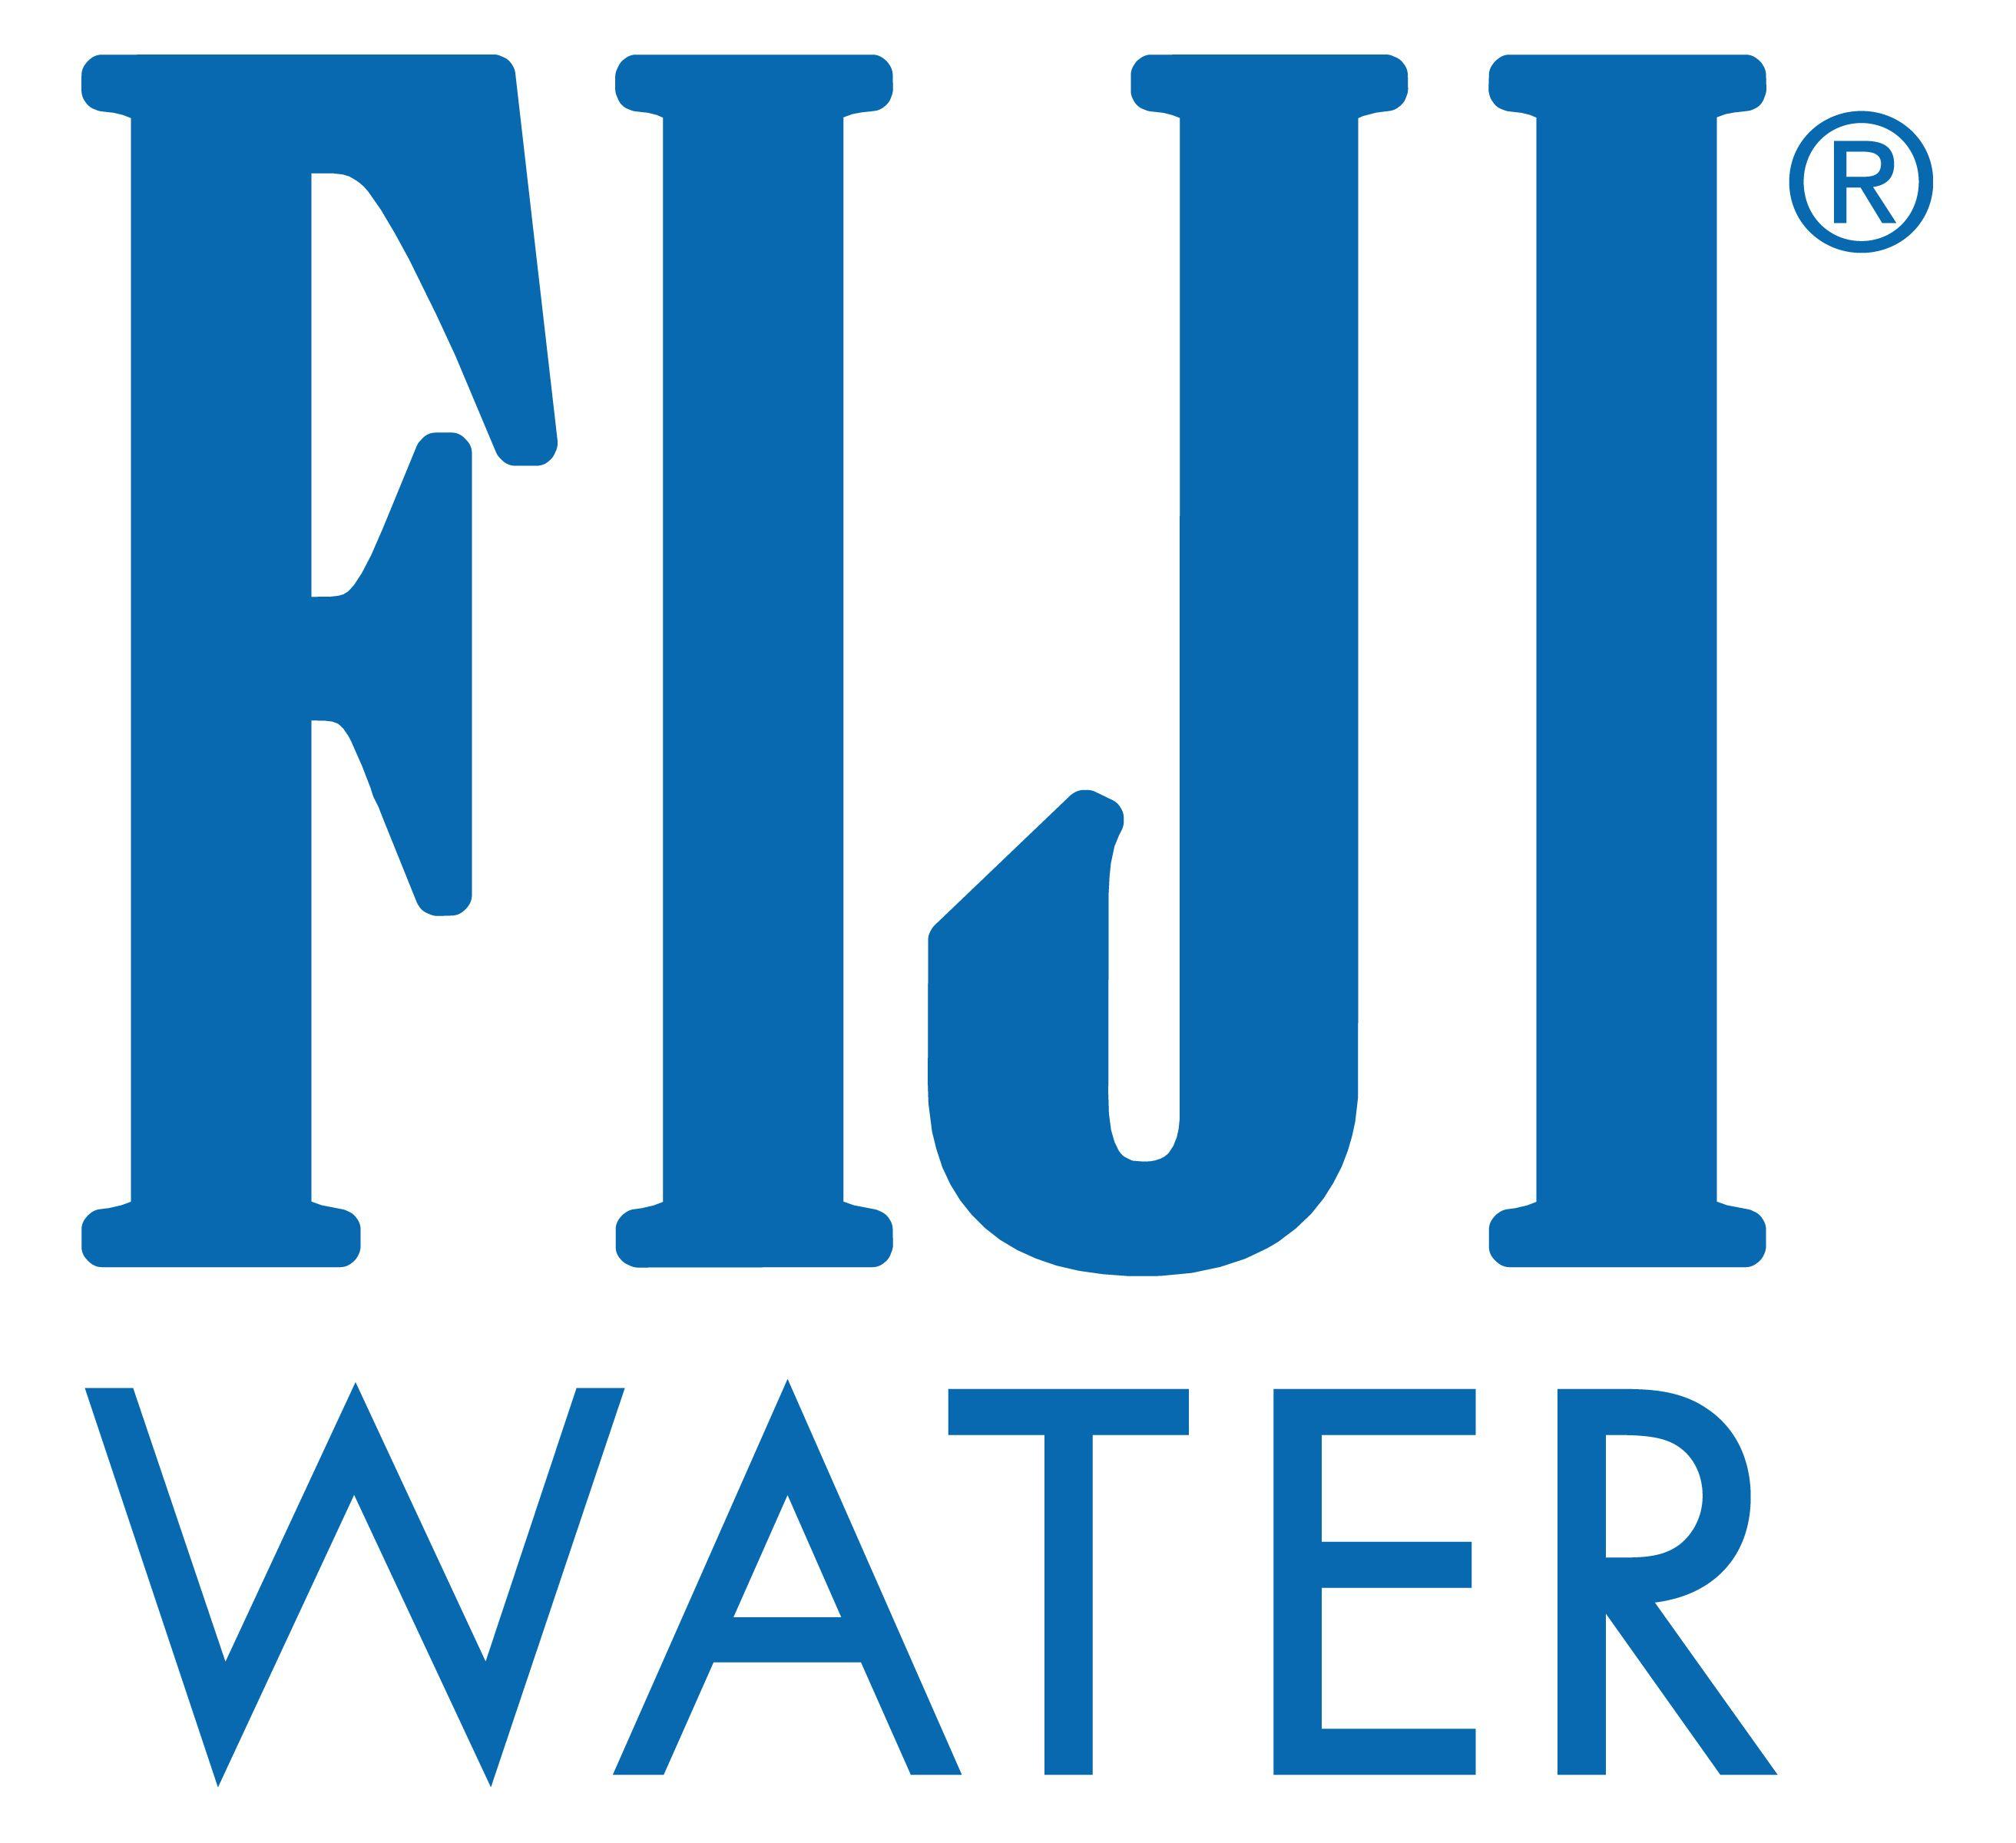 Fijian Company Logo - Fiji Logos